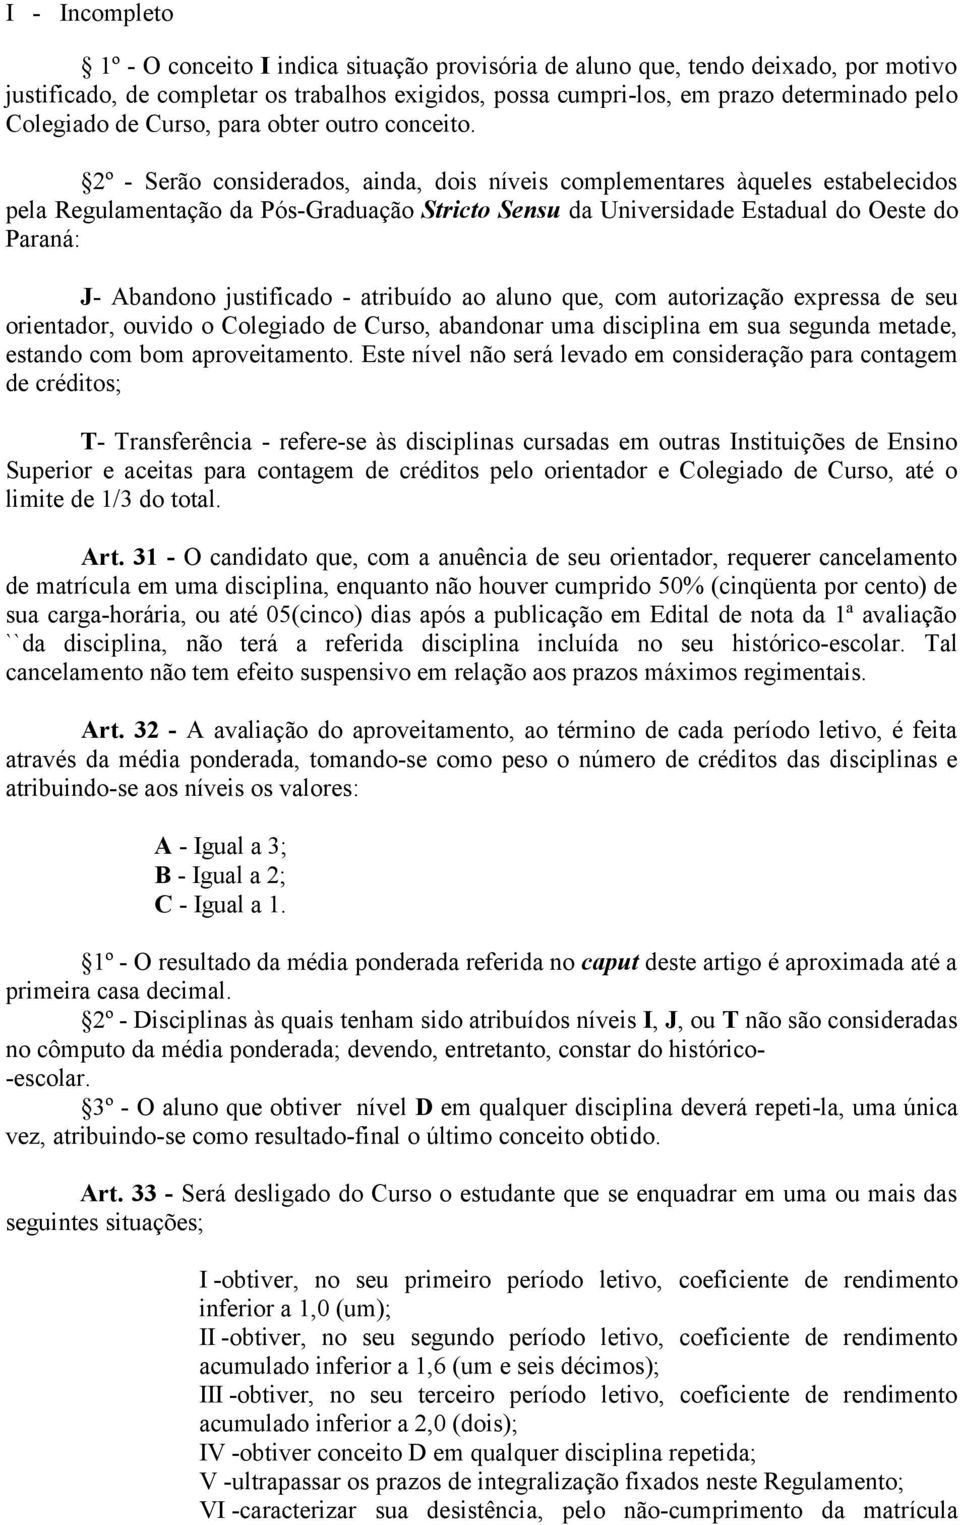 2º - Serão considerados, ainda, dois níveis complementares àqueles estabelecidos pela Regulamentação da Pós-Graduação Stricto Sensu da Universidade Estadual do Oeste do Paraná: J- Abandono